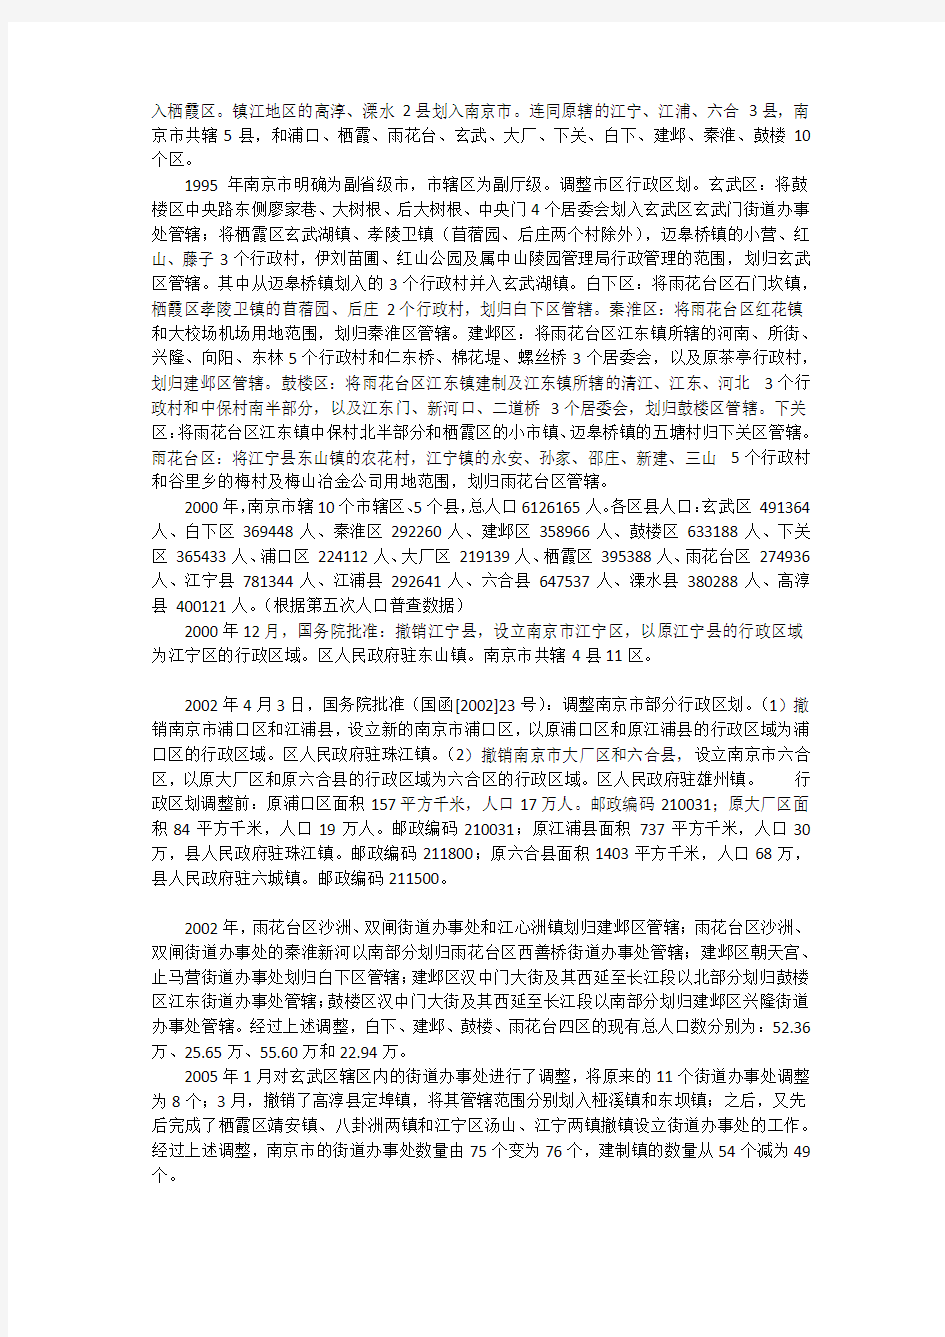 南京市行政区划及历史沿革